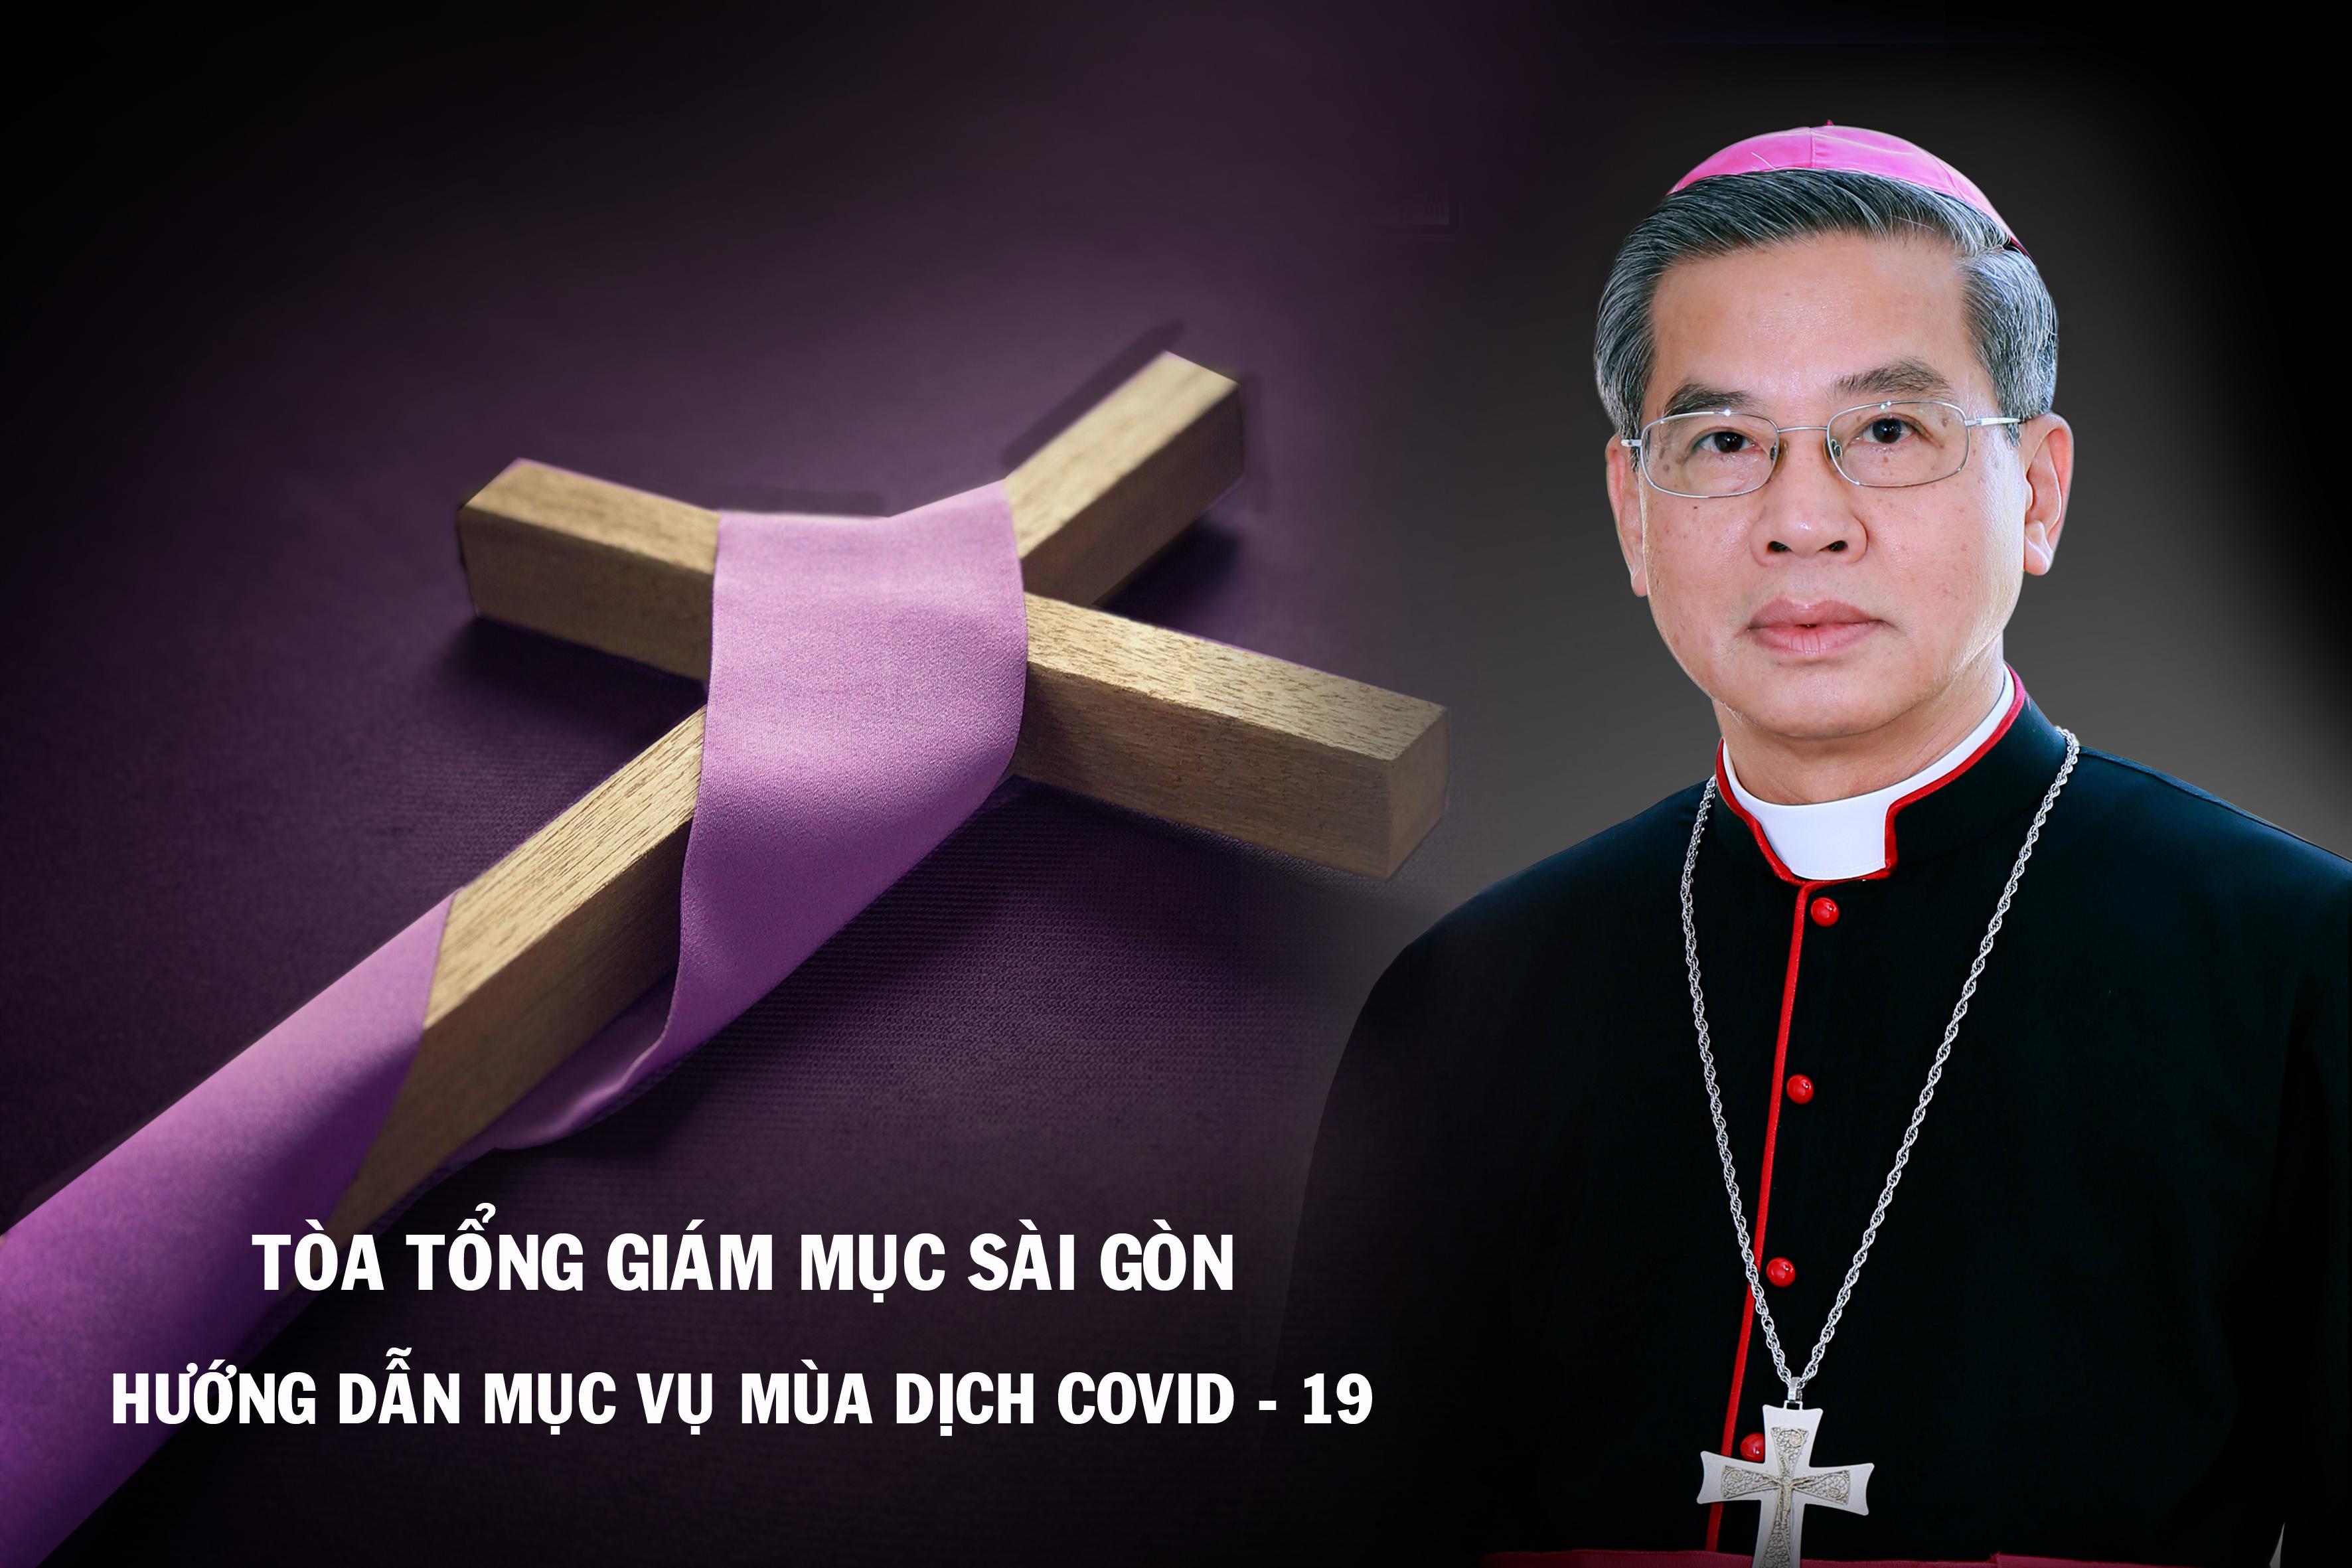 Tòa Tổng Giám mục Sài Gòn: Hướng dẫn mục vụ mùa dịch Covid-19 ngày 19.03.2020